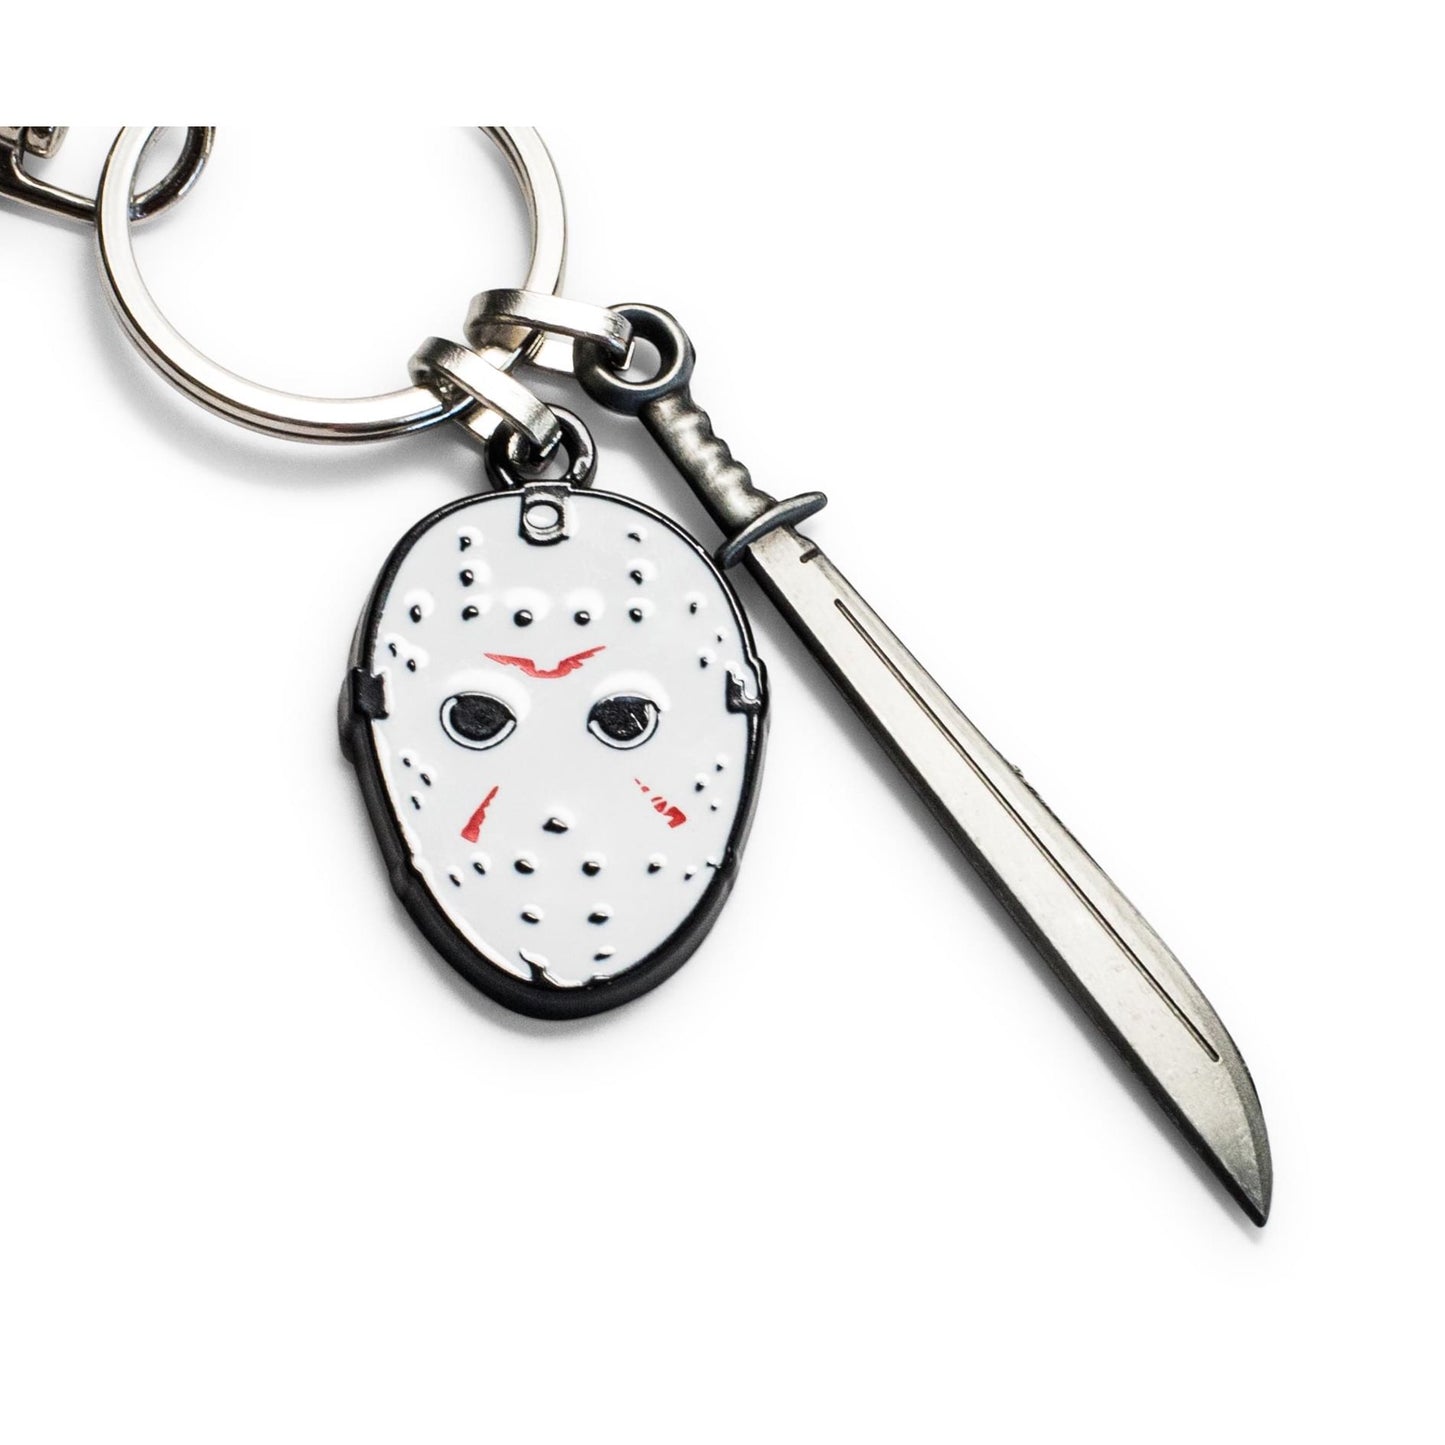 Jason's Mask & Machete Friday the 13th Enamel Keychain